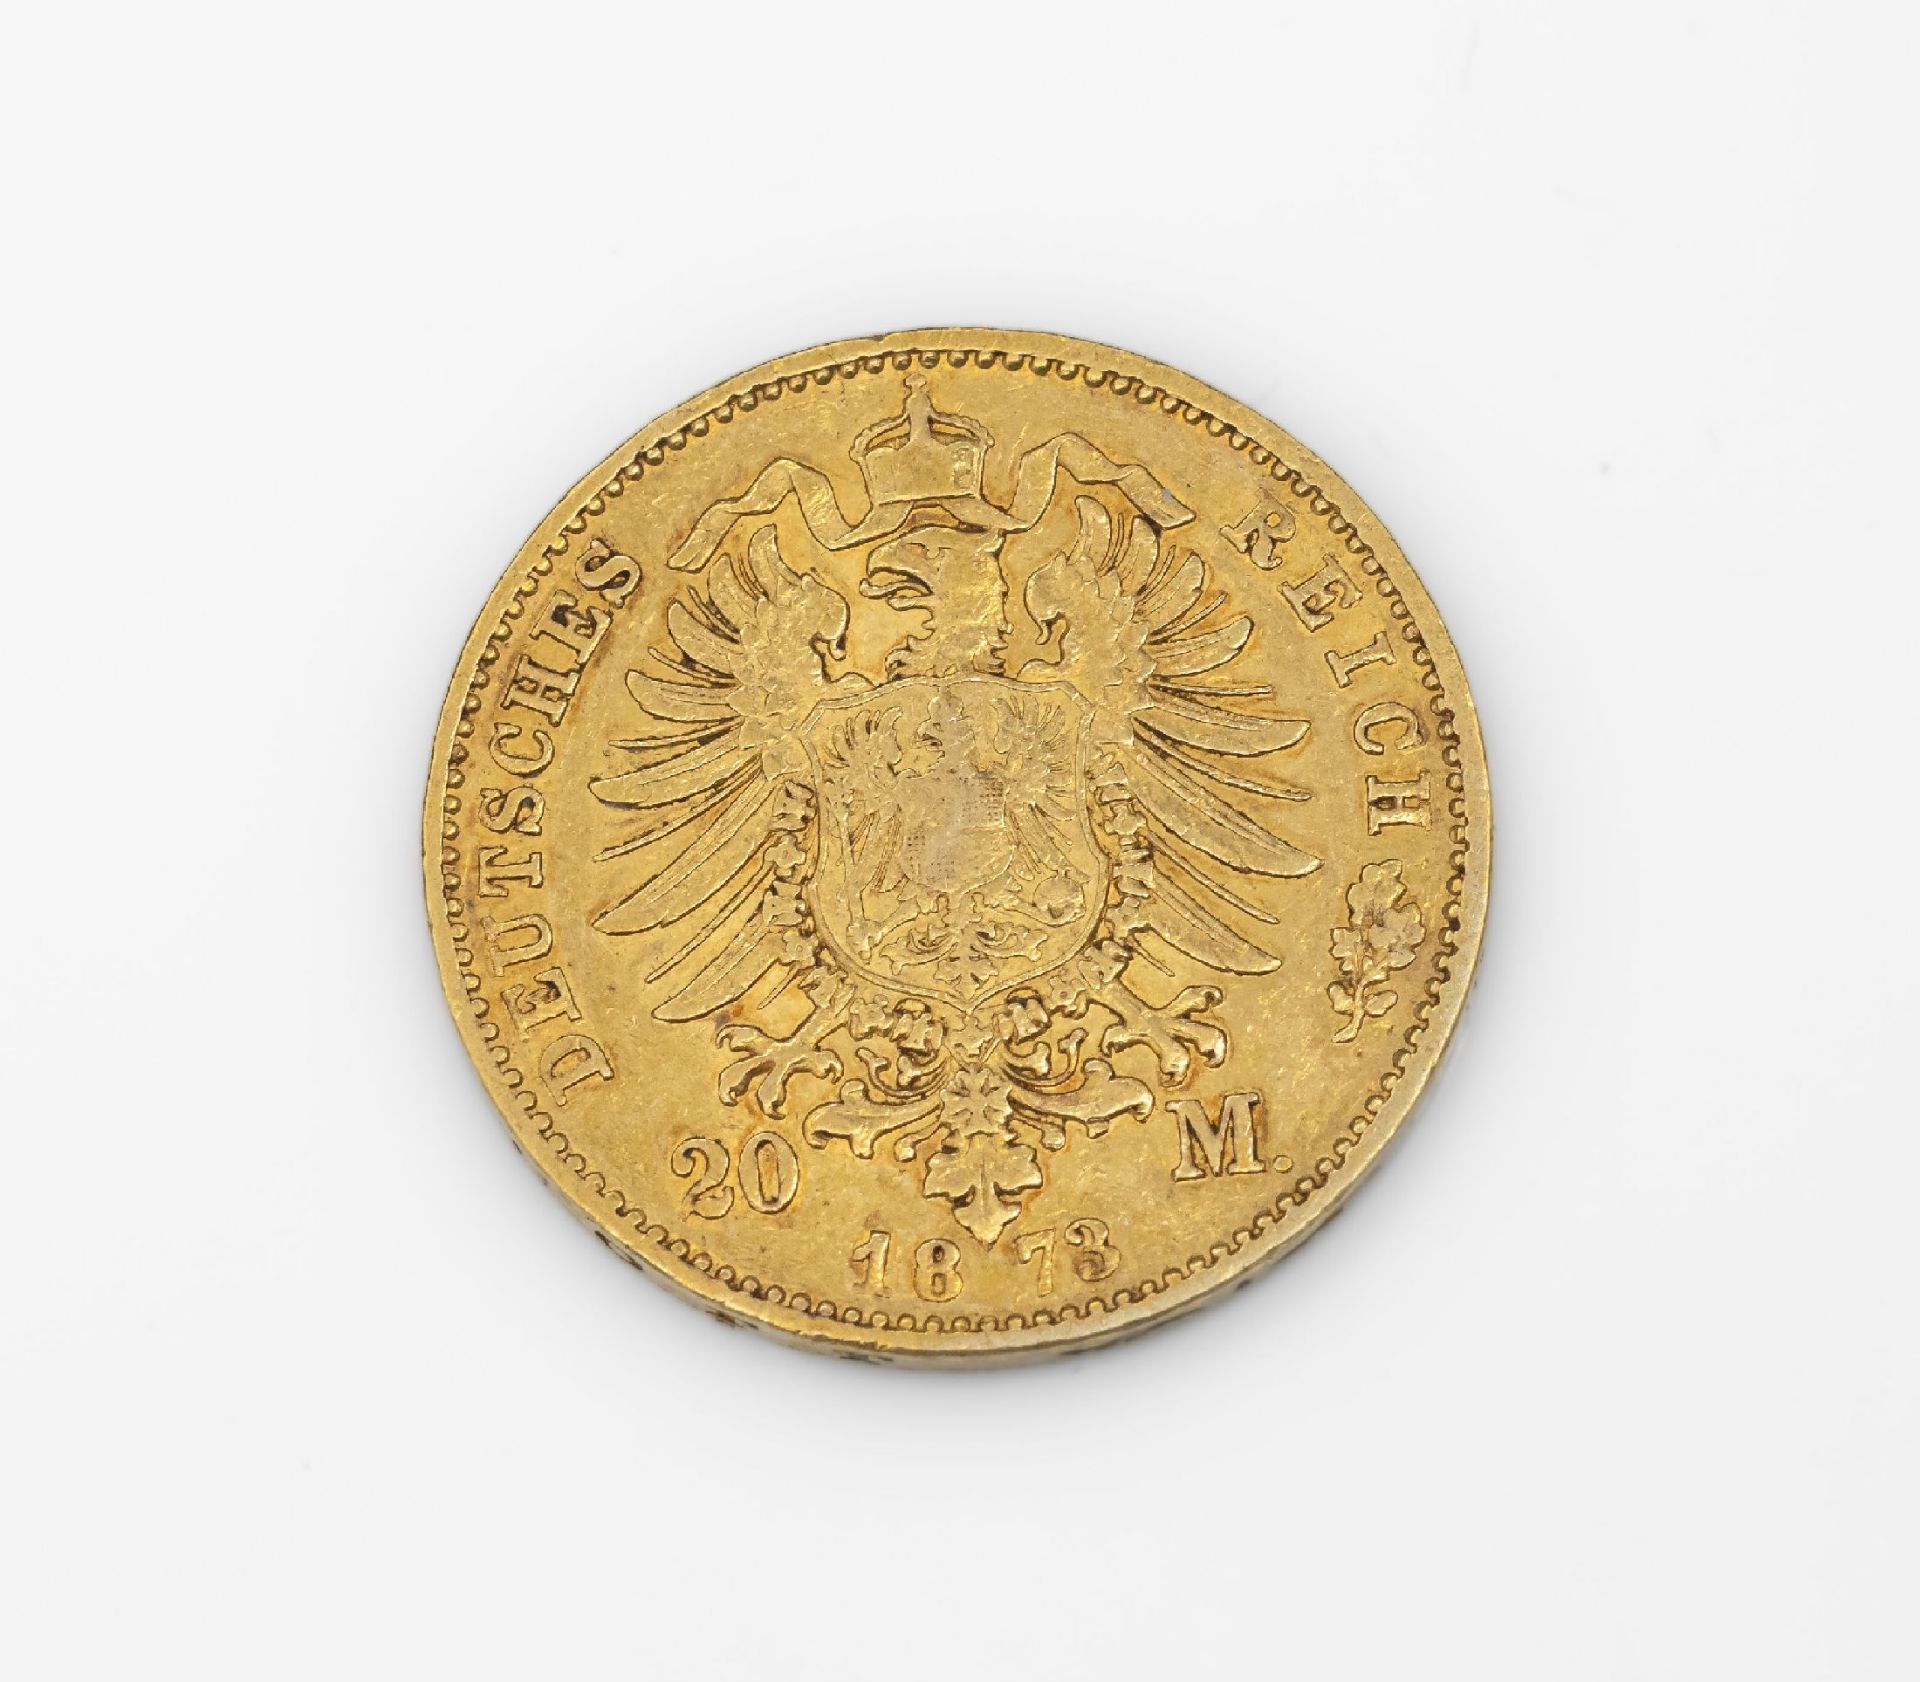 Goldmünze 20 Mark Deutsches Reich 1873, Ludwig II. König - Image 2 of 2